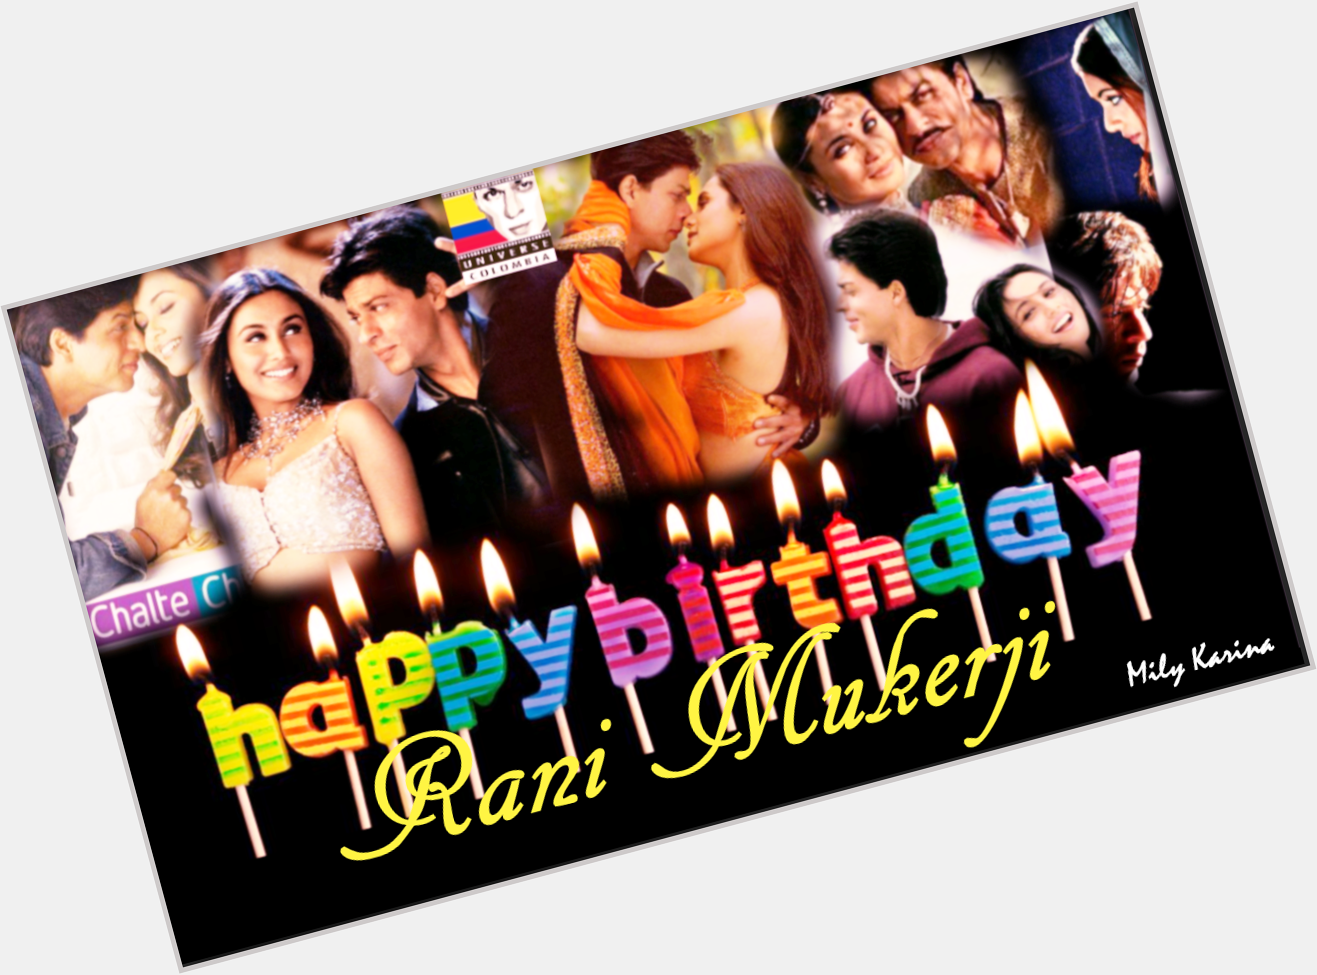 Los SRKians Colombianos queremos desearle un hermoso cumpleaños a una gran actriz...Happy Birthday Rani Mukerji. 